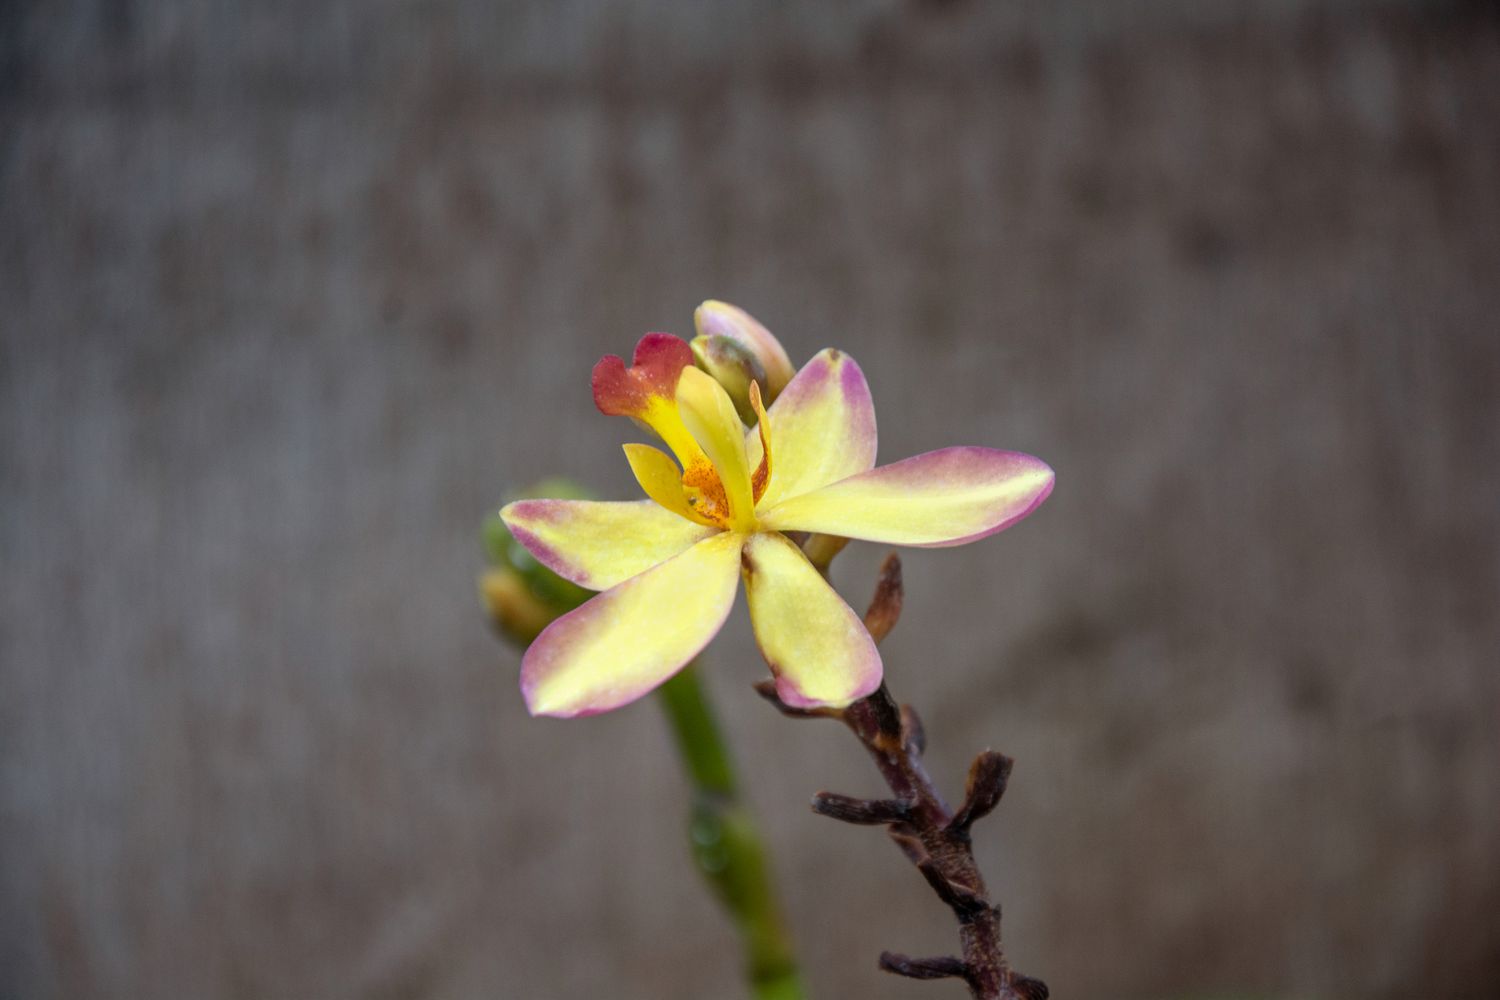 Spathoglottis-Orchidee mit gelber Blüte mit rosa Spitzen am Stielrand in Nahaufnahme